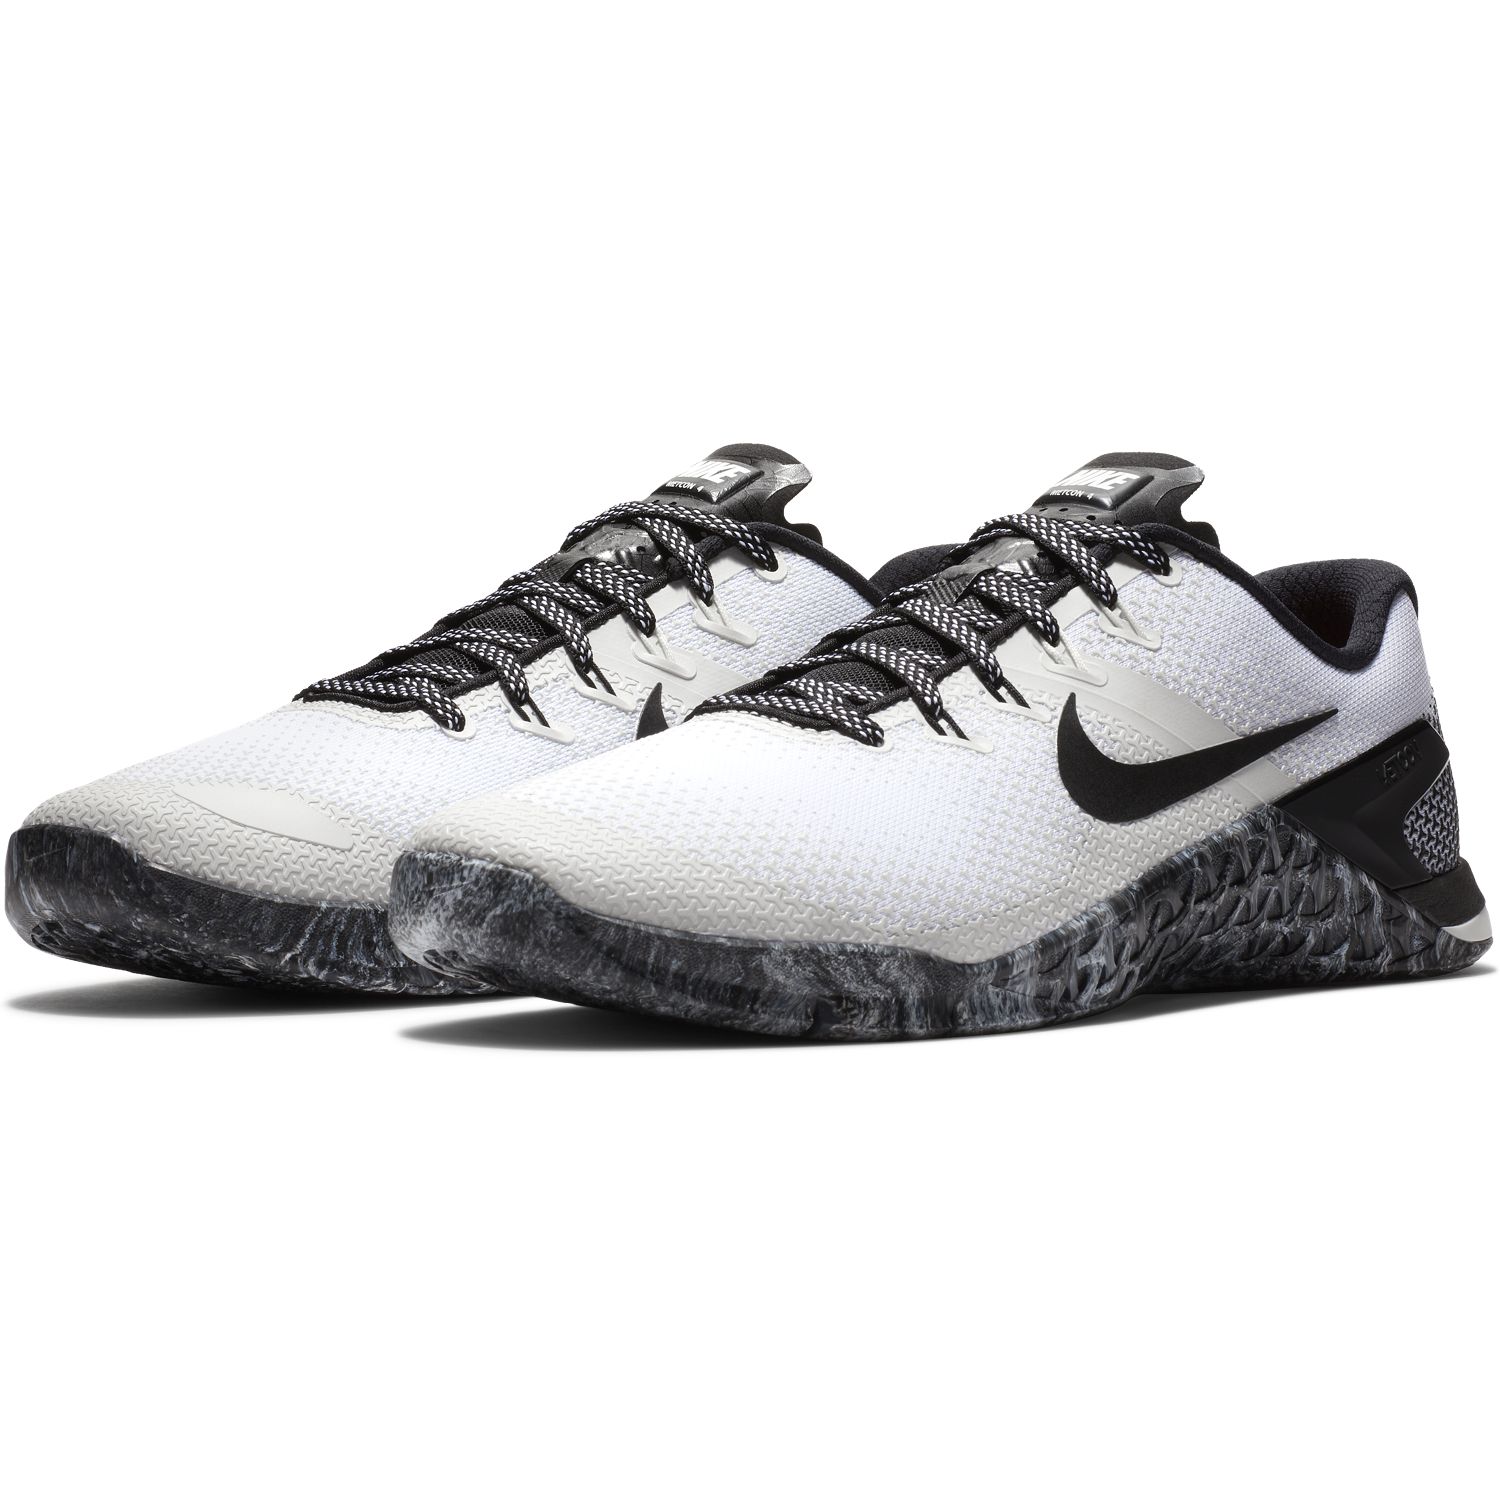 Nike Metcon 4 pair